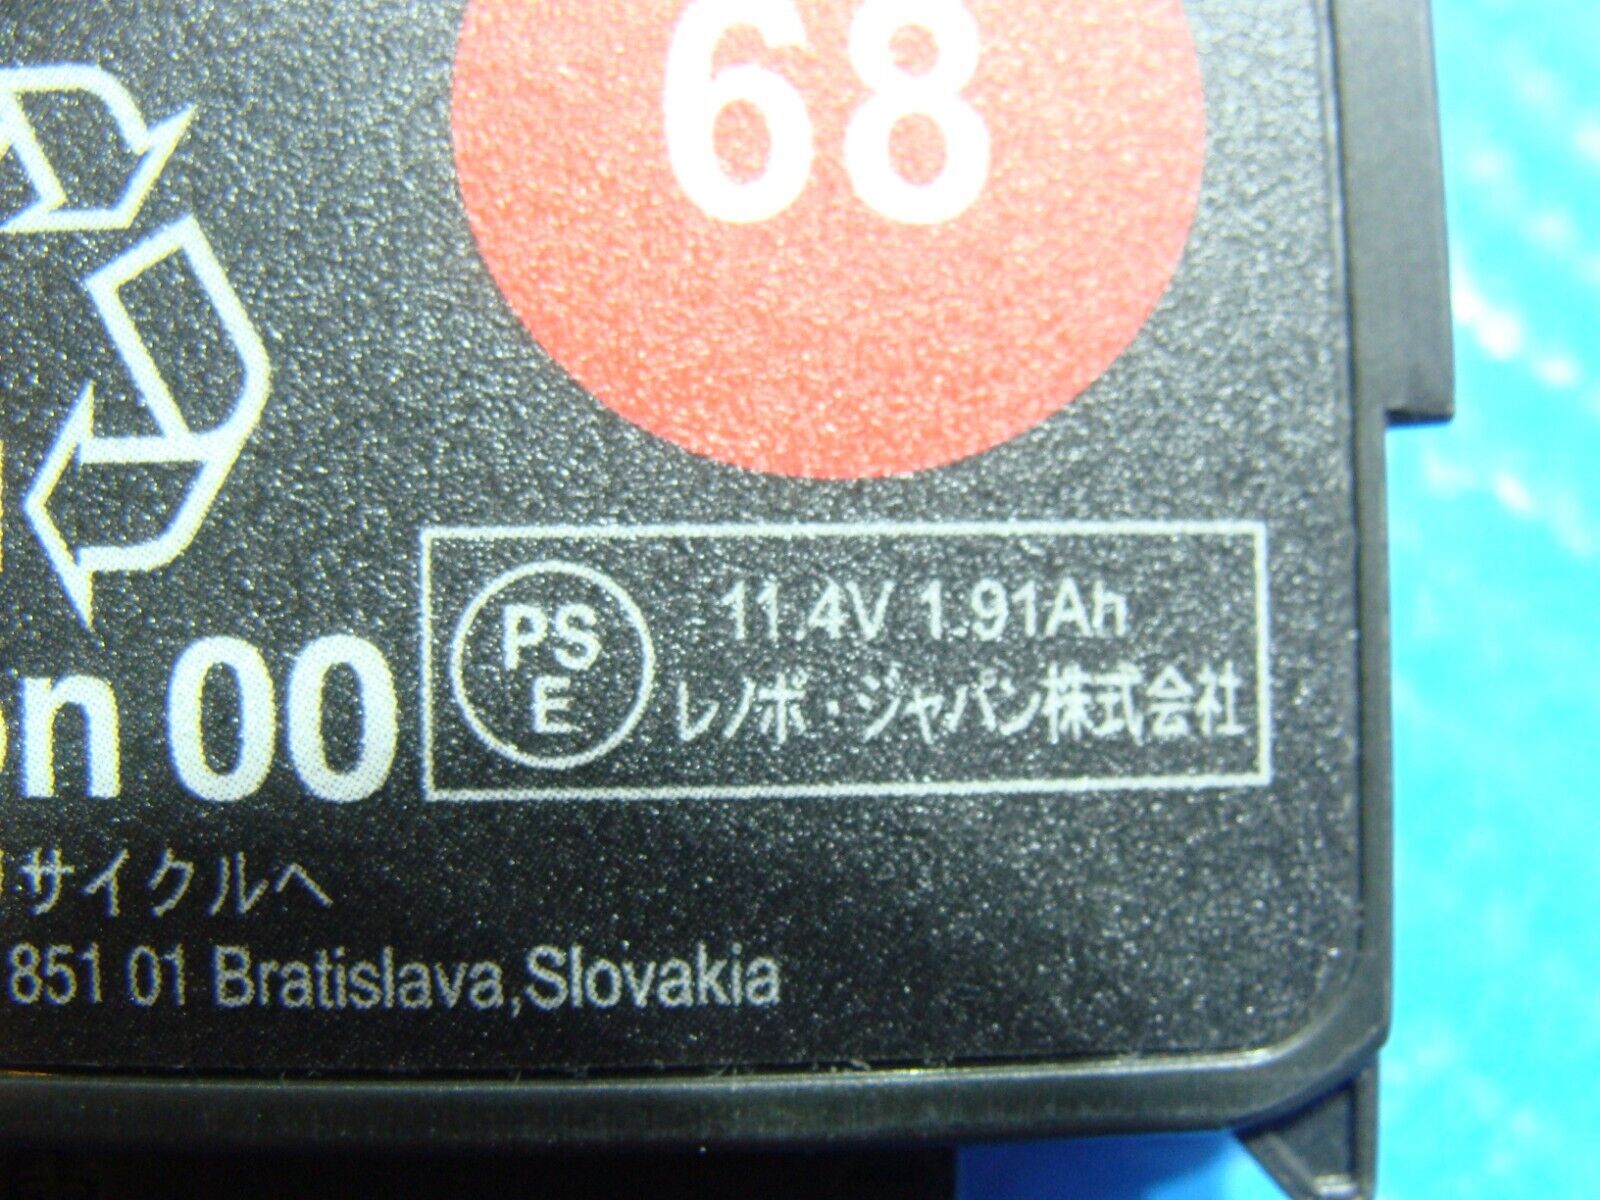 Lenovo Thinkpad T460 14